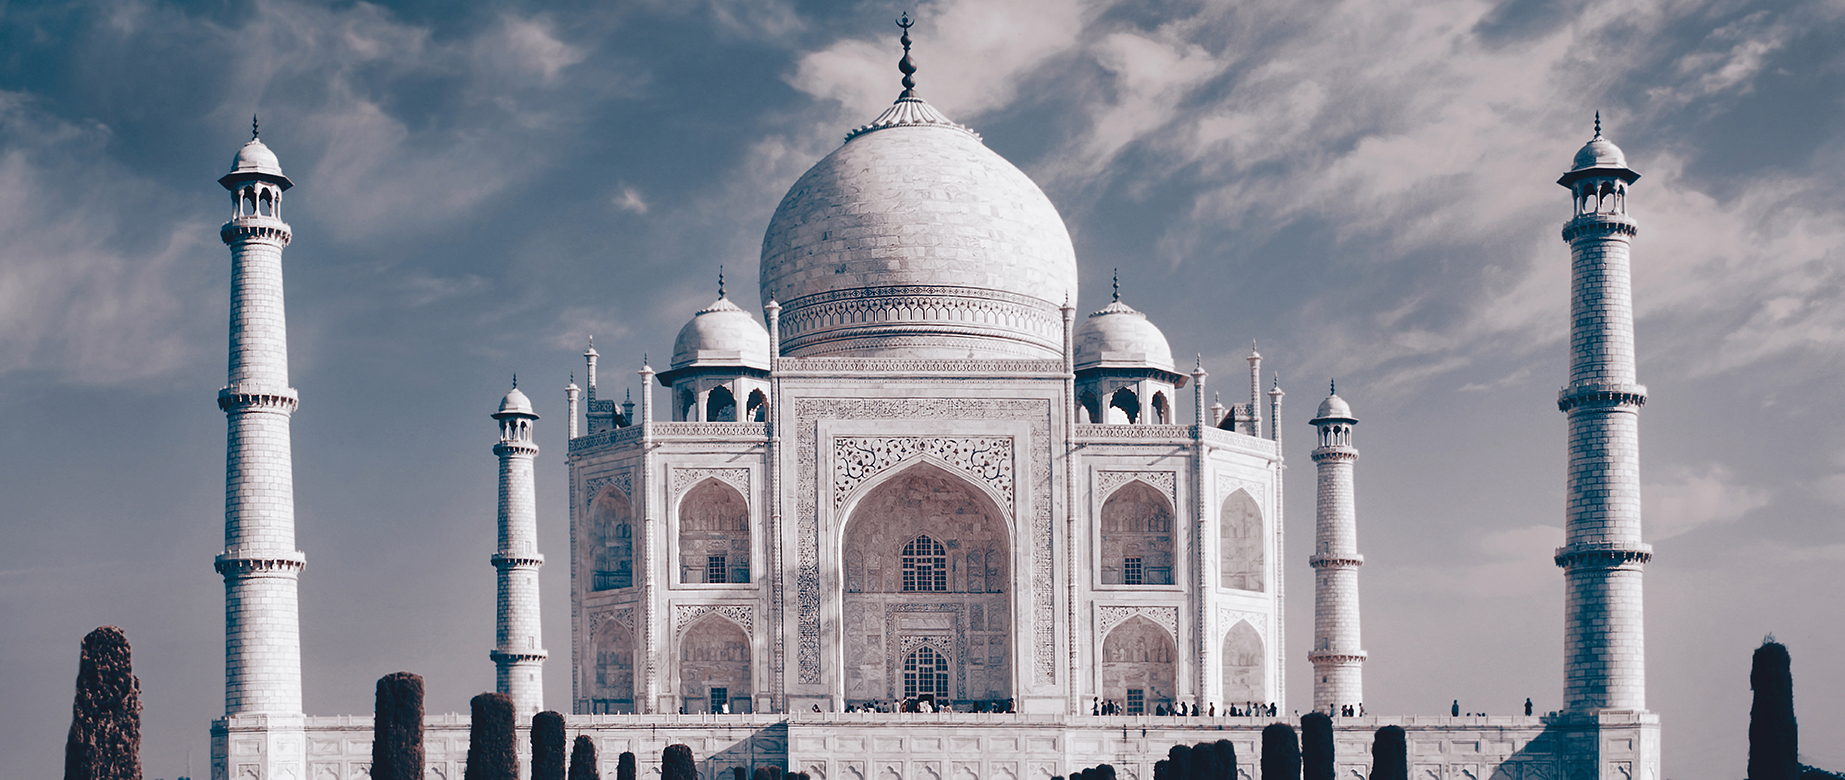 Taj Mahal Customized Wallpaper